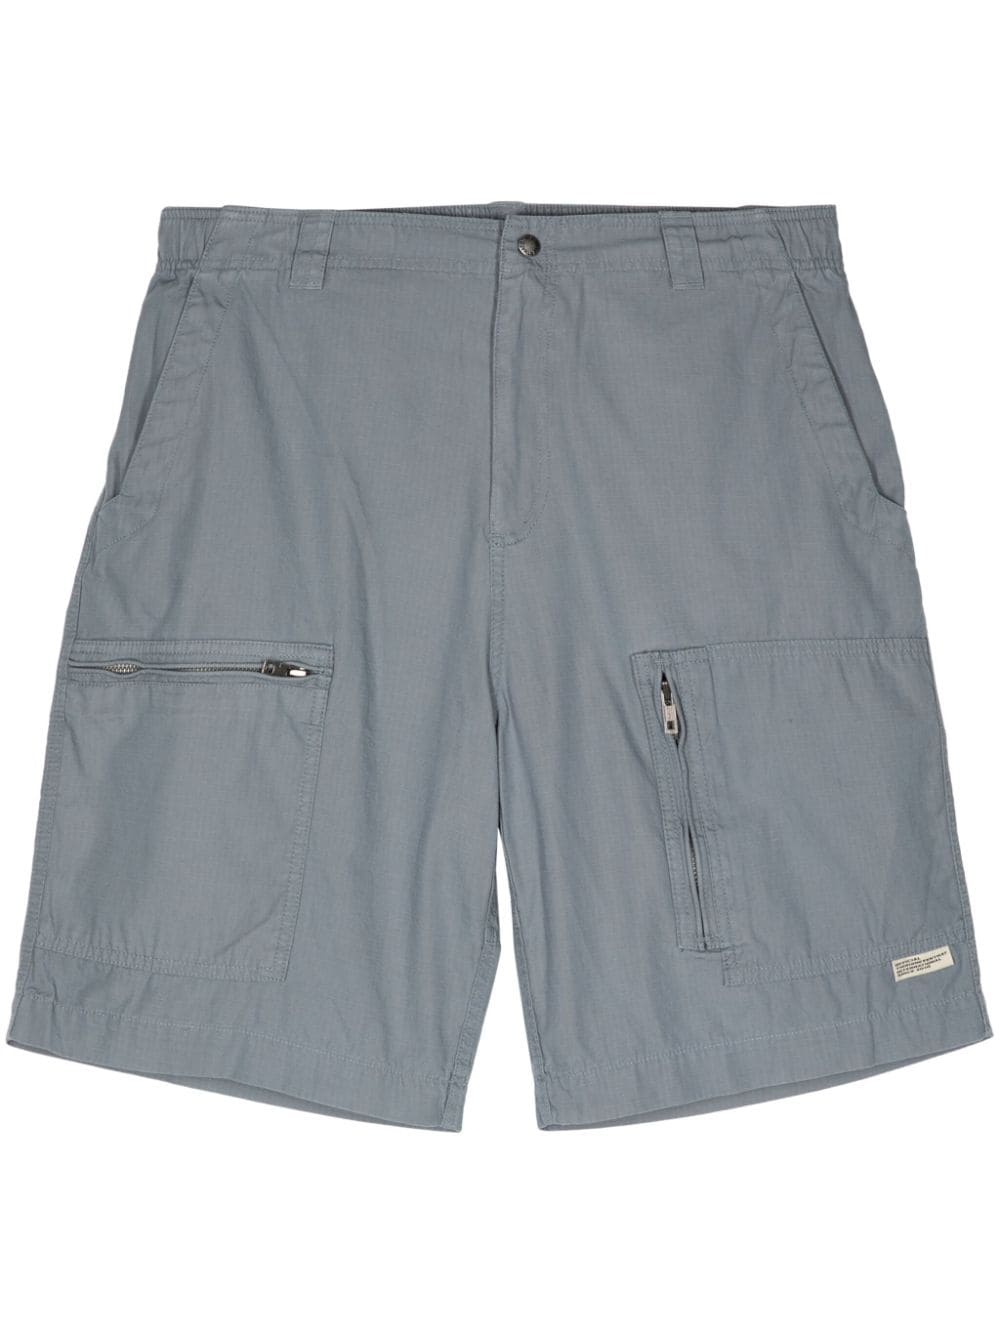 multiple-pocket cotton cargo shorts